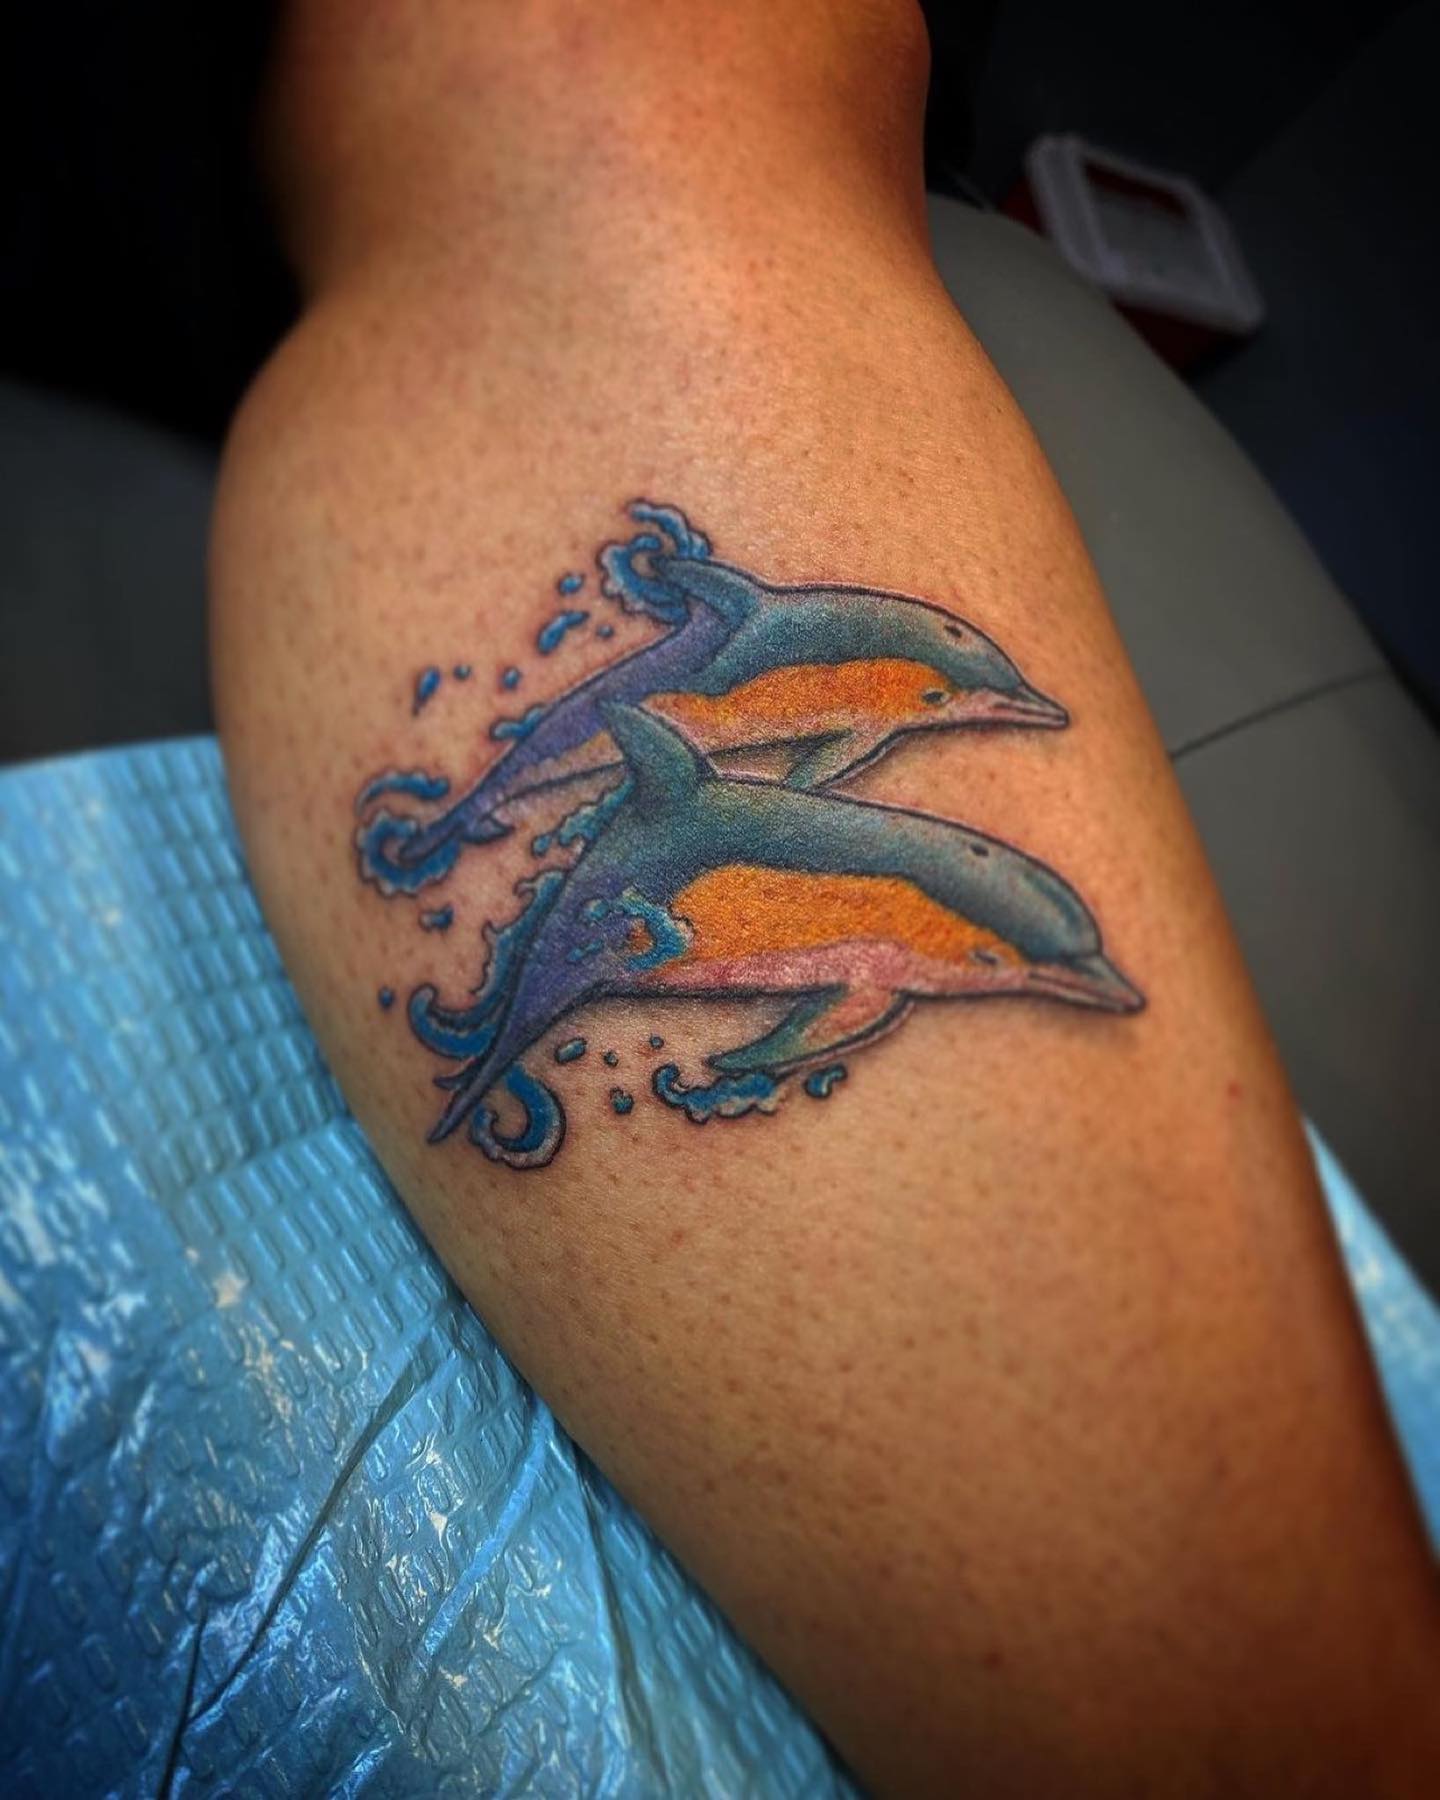 Extraordinary Small Dolphin Tattoos  Small Dolphin Tattoos  Small Tattoos   MomCanvas